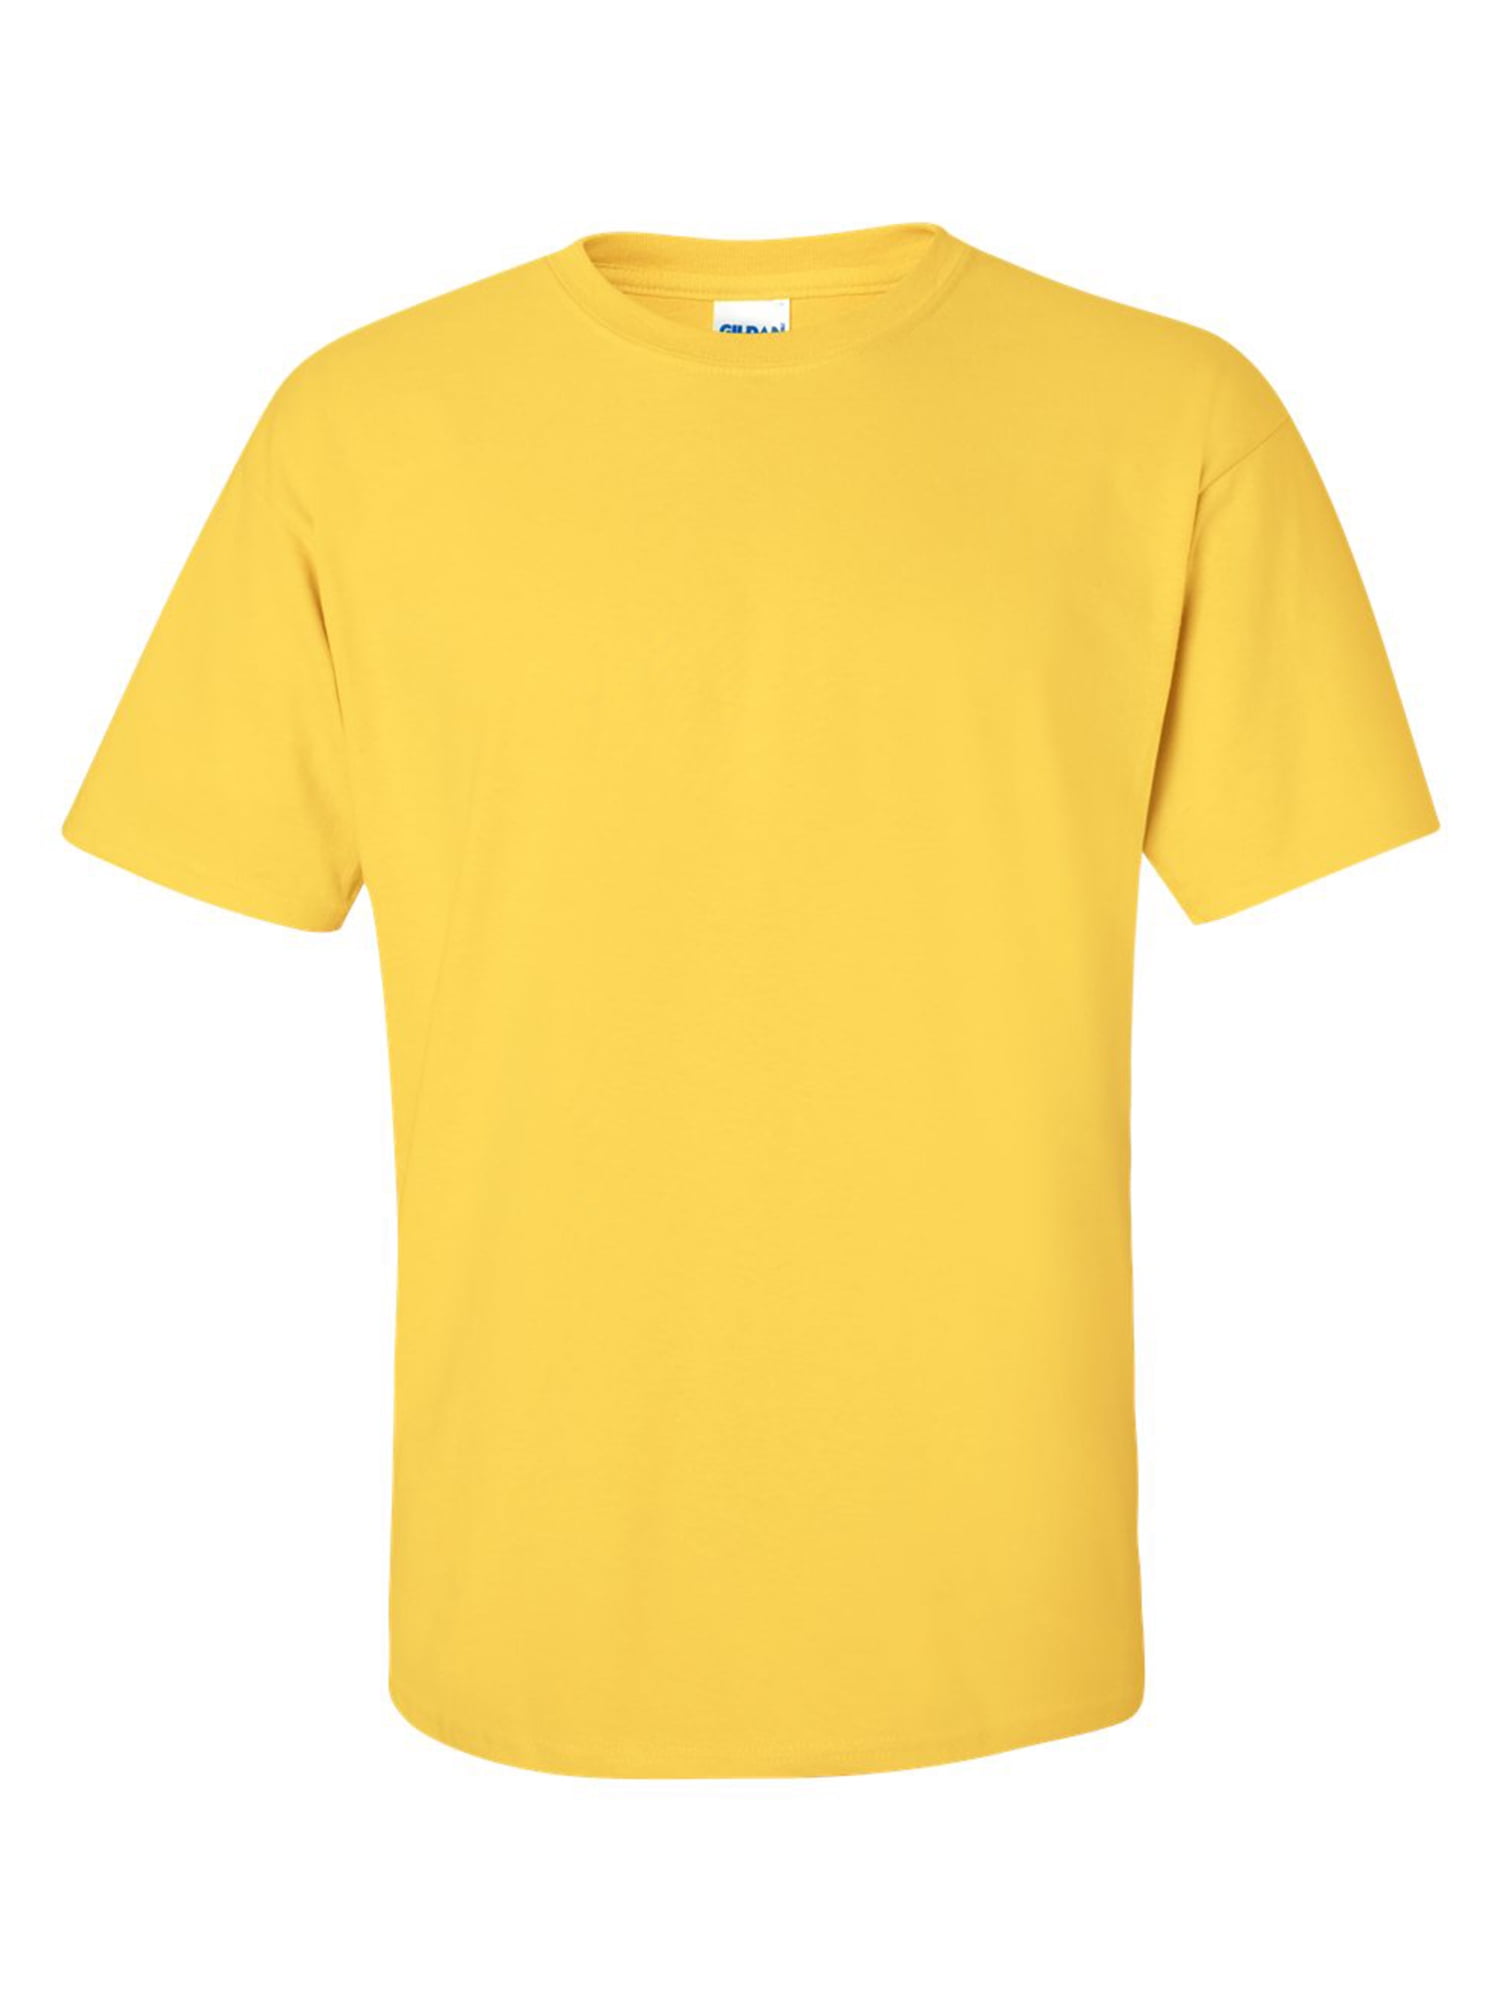 yellow tee shirt womens